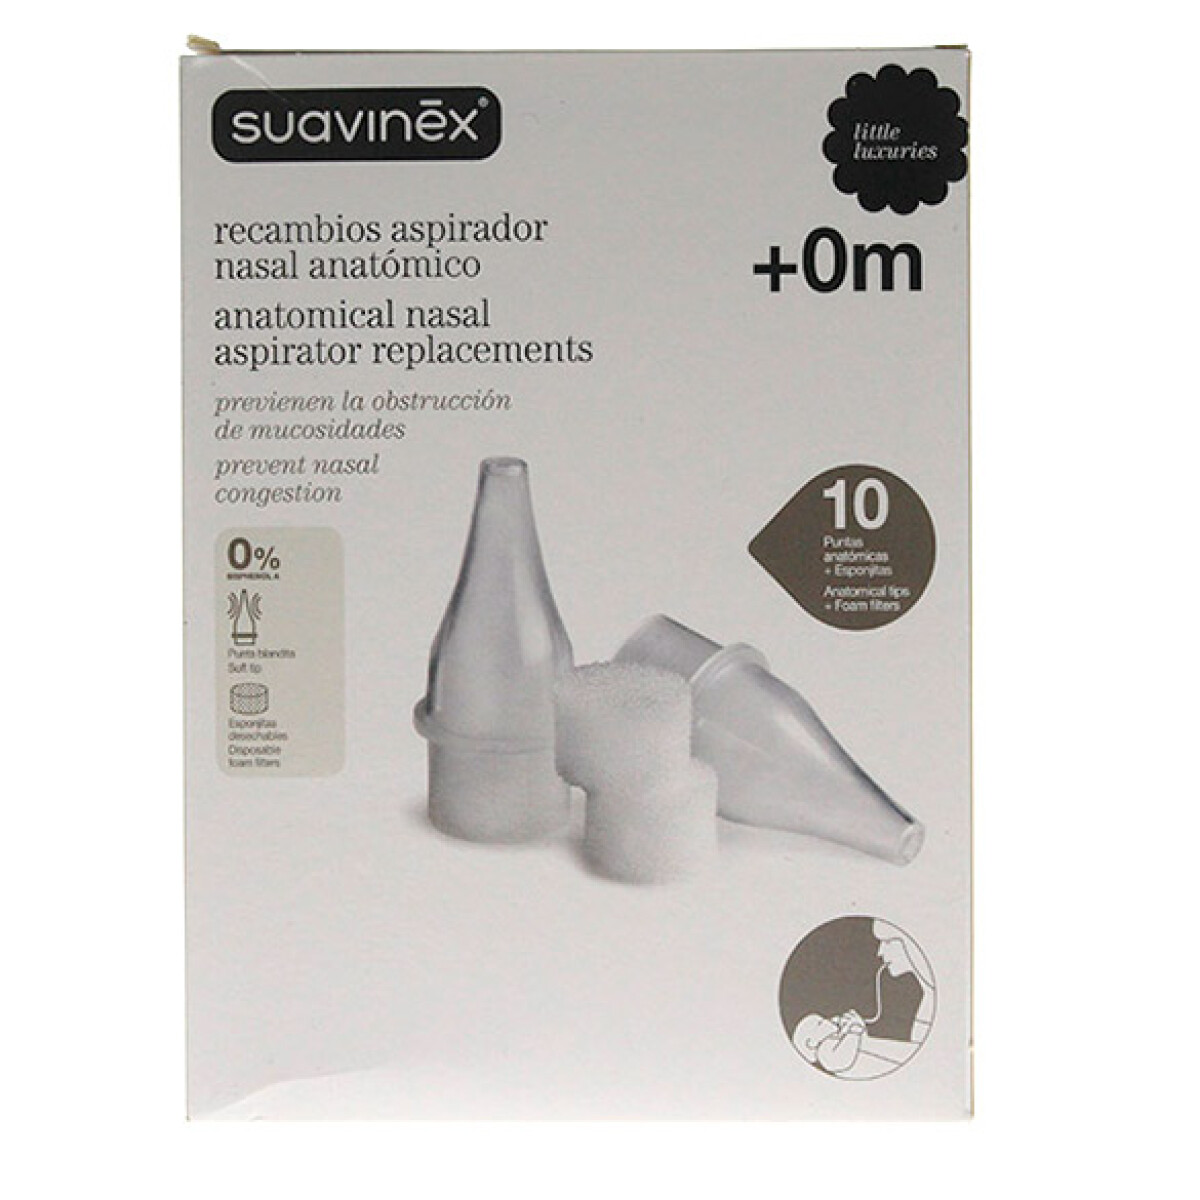 Recambio de aspirador nasal anatómico - SUAVINEX 